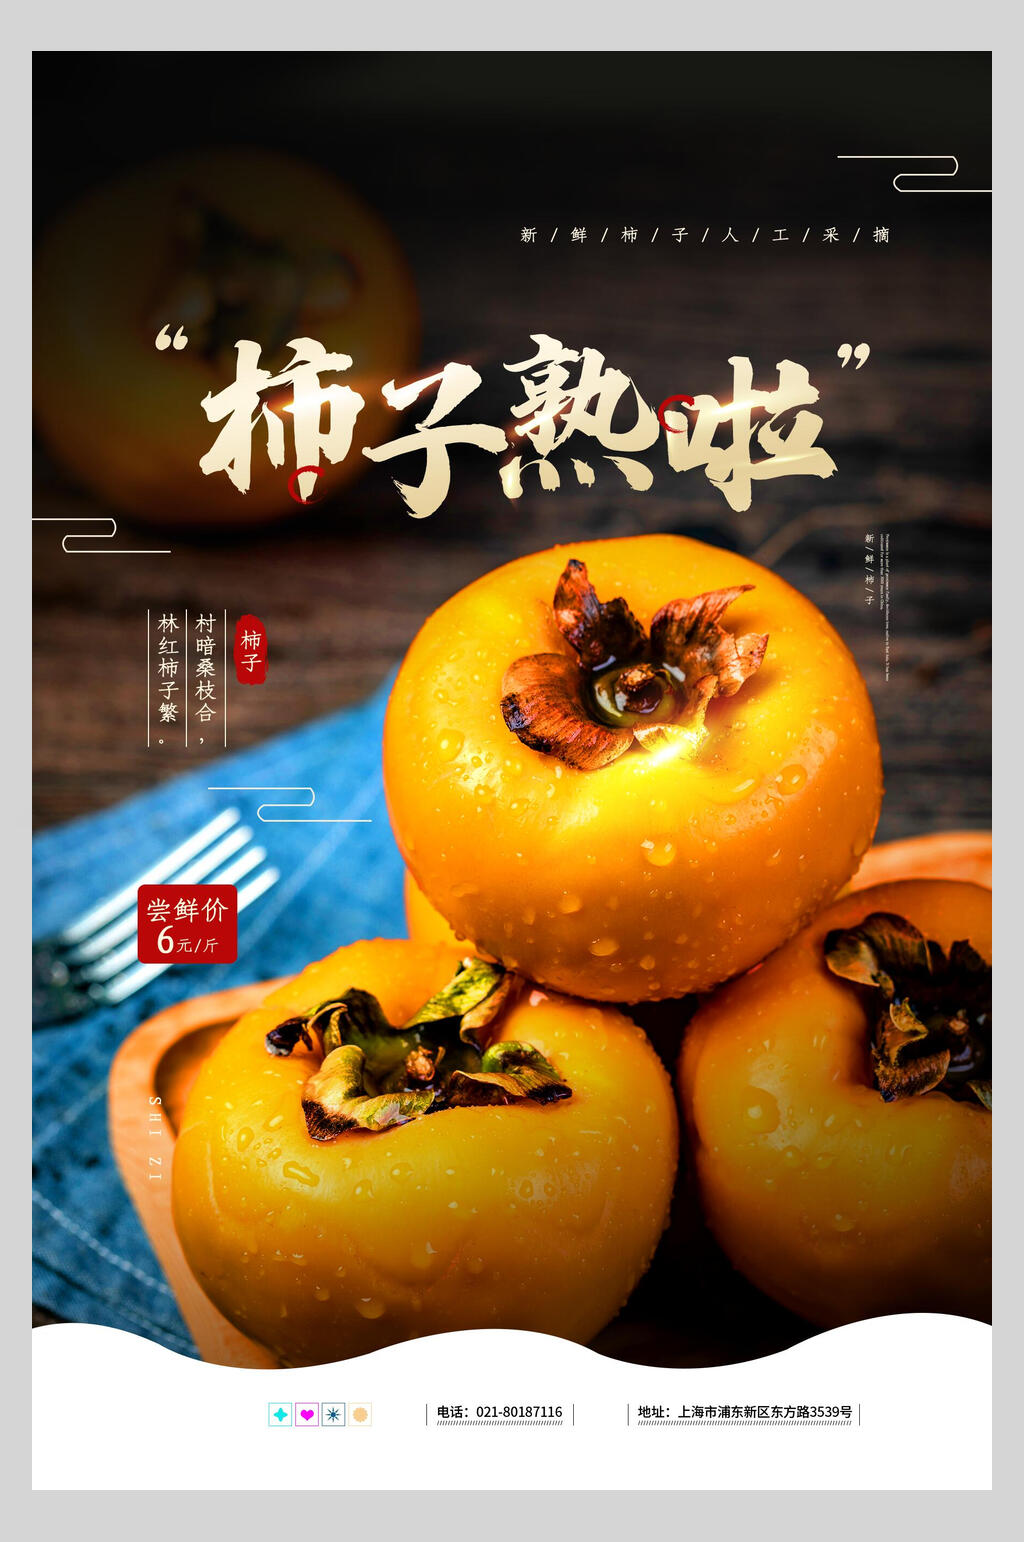 众图网独家提供柿子熟啦水果海报素材免费下载,本作品是由小红1210